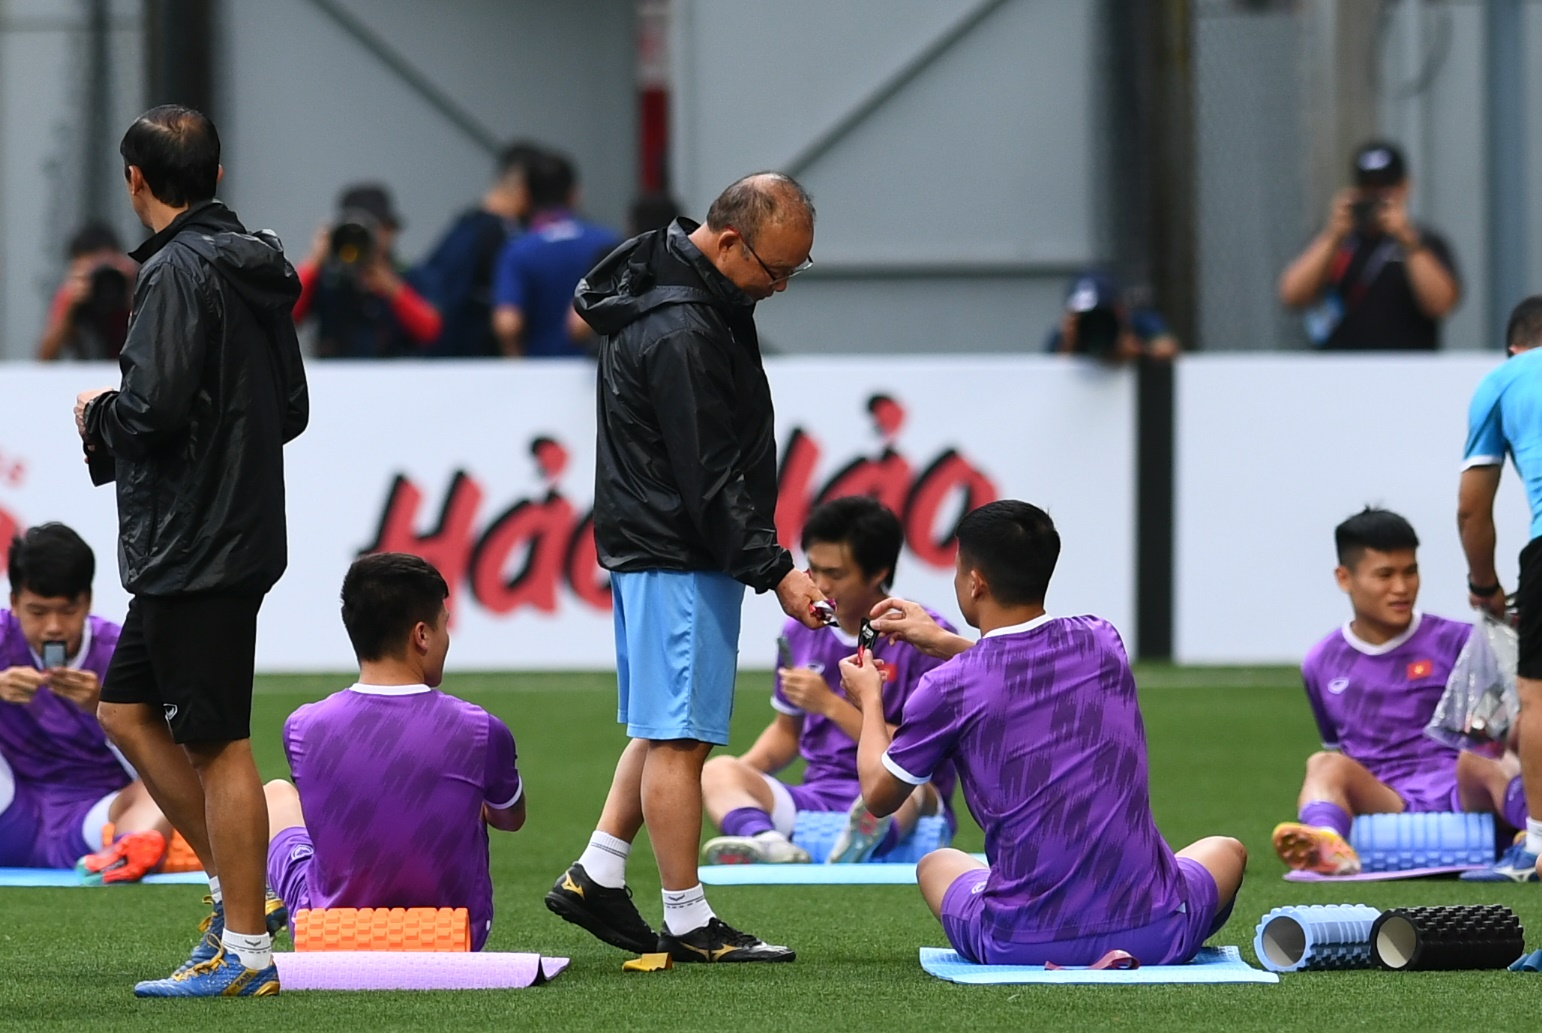 HLV Park Hang-seo quan tâm đặc biệt đến giày thi đấu, ĐT Việt Nam thích nghi với mặt cỏ nhân tạo - Ảnh 4.